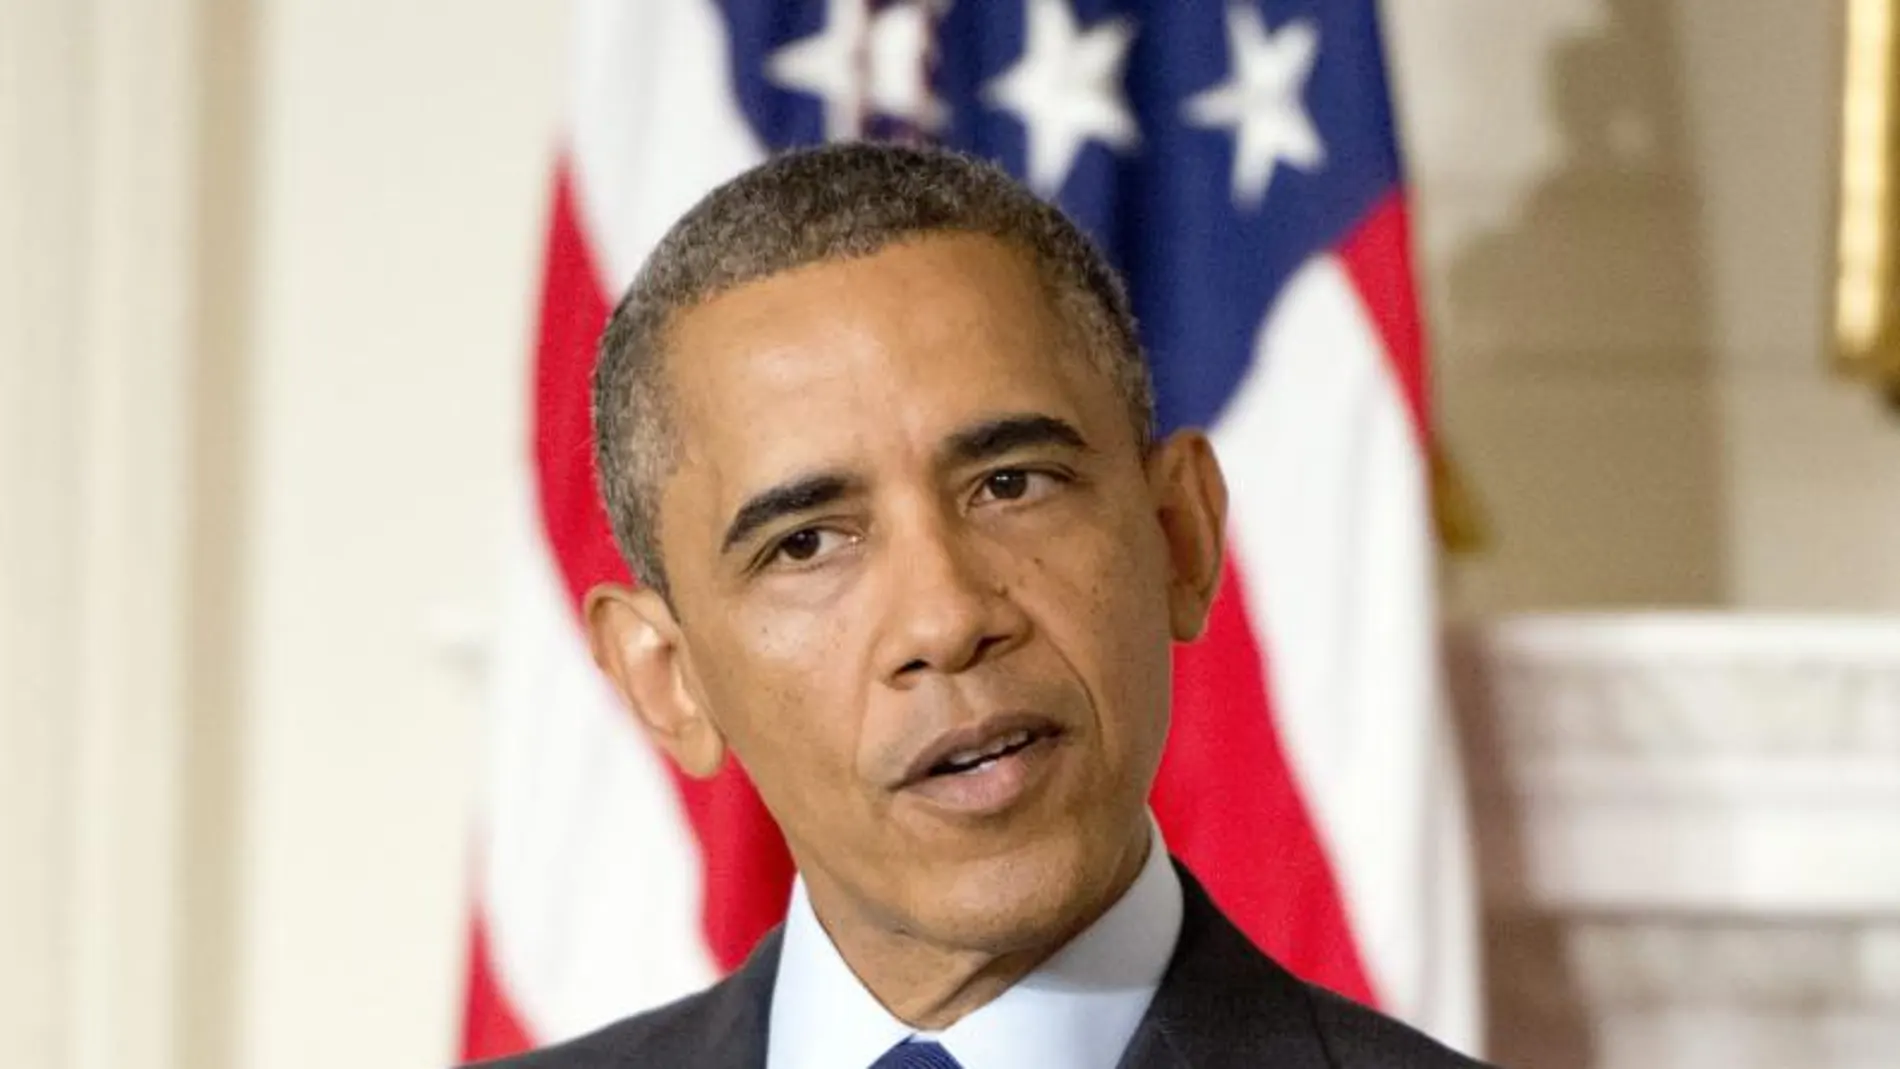 El presidente estadounidense Barack Obama (i) da un discurso junto al director de la Oficina de Protección Financiera del Consumidor (CFPB) Richard Cordray (no en la imagen) durante un acto celebrado en la Casa Blanca, Washington, Estados Unidos hoy 17 de julio de 2013.